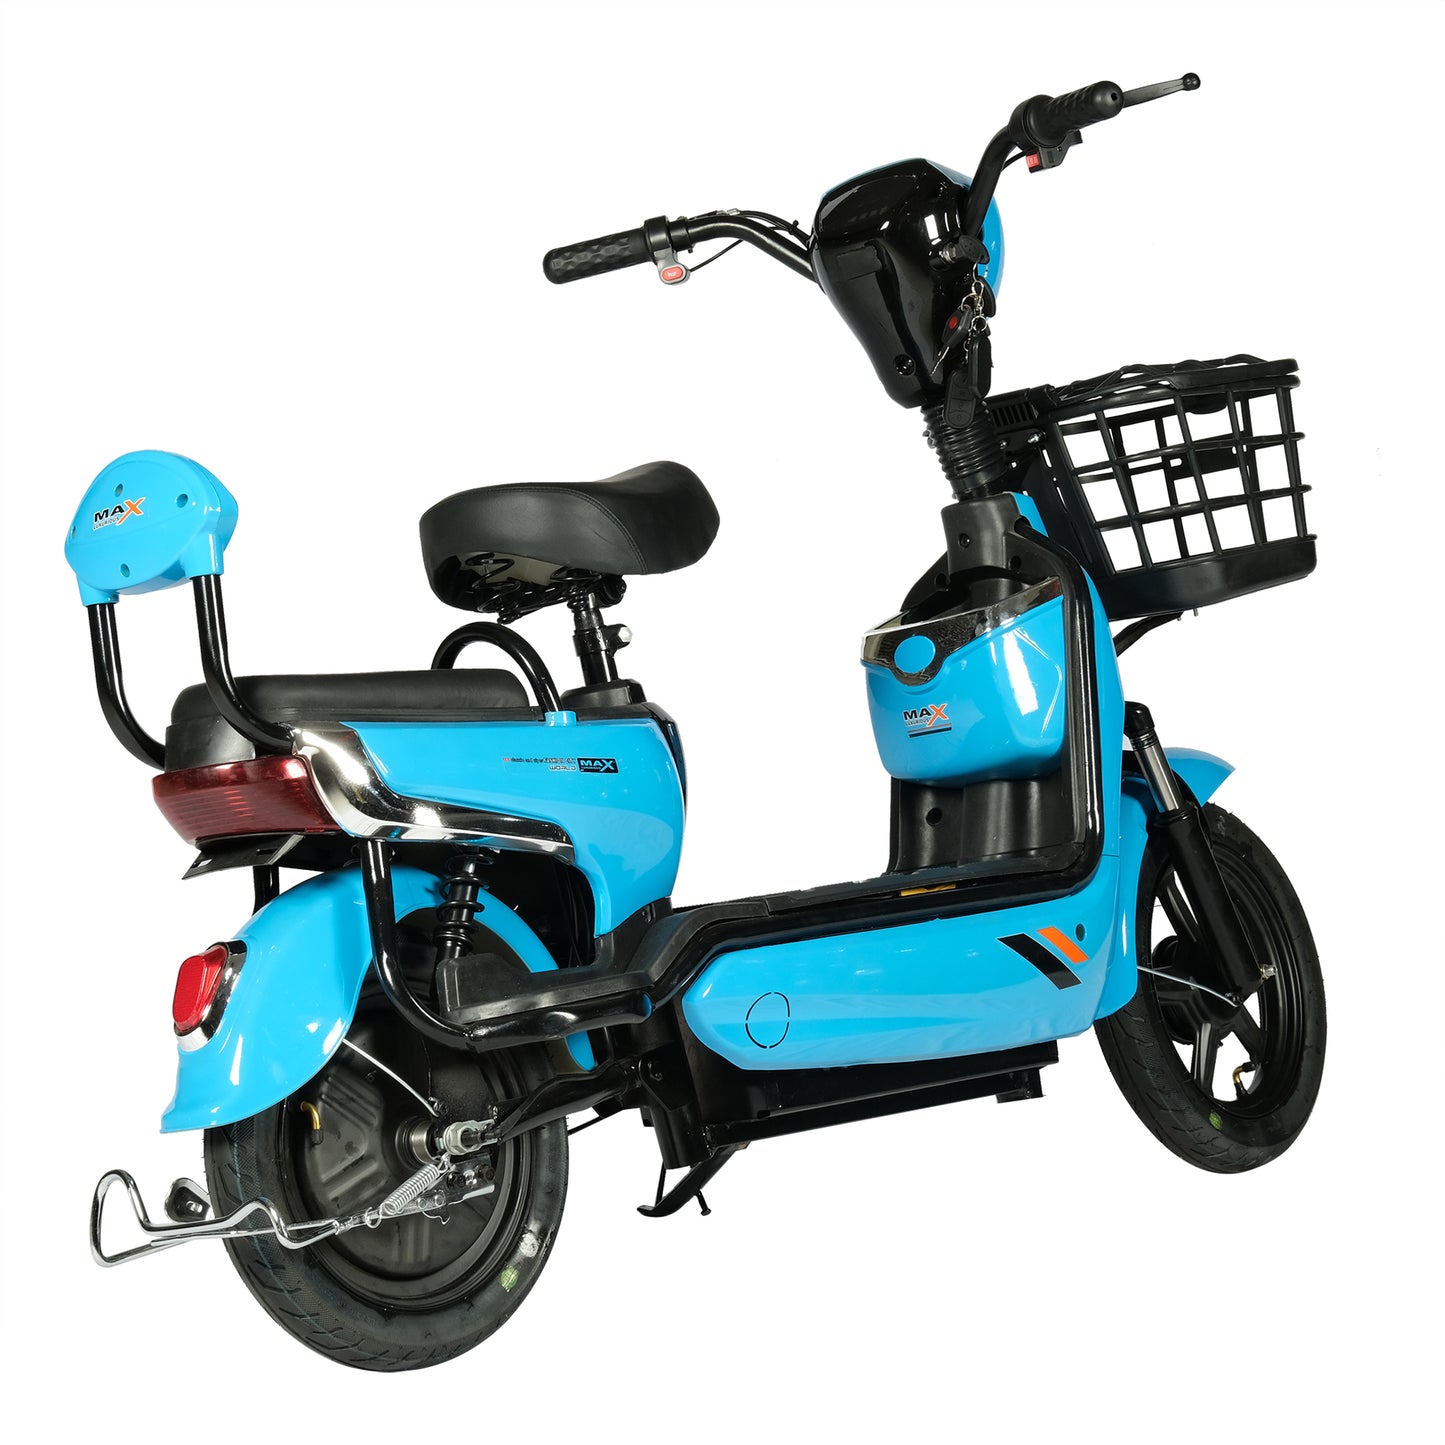 كروني W3 دراجة نارية دراجة كهربائية 350 واط 48 فولت دراجة نارية كهربائية دراجات كهربائية